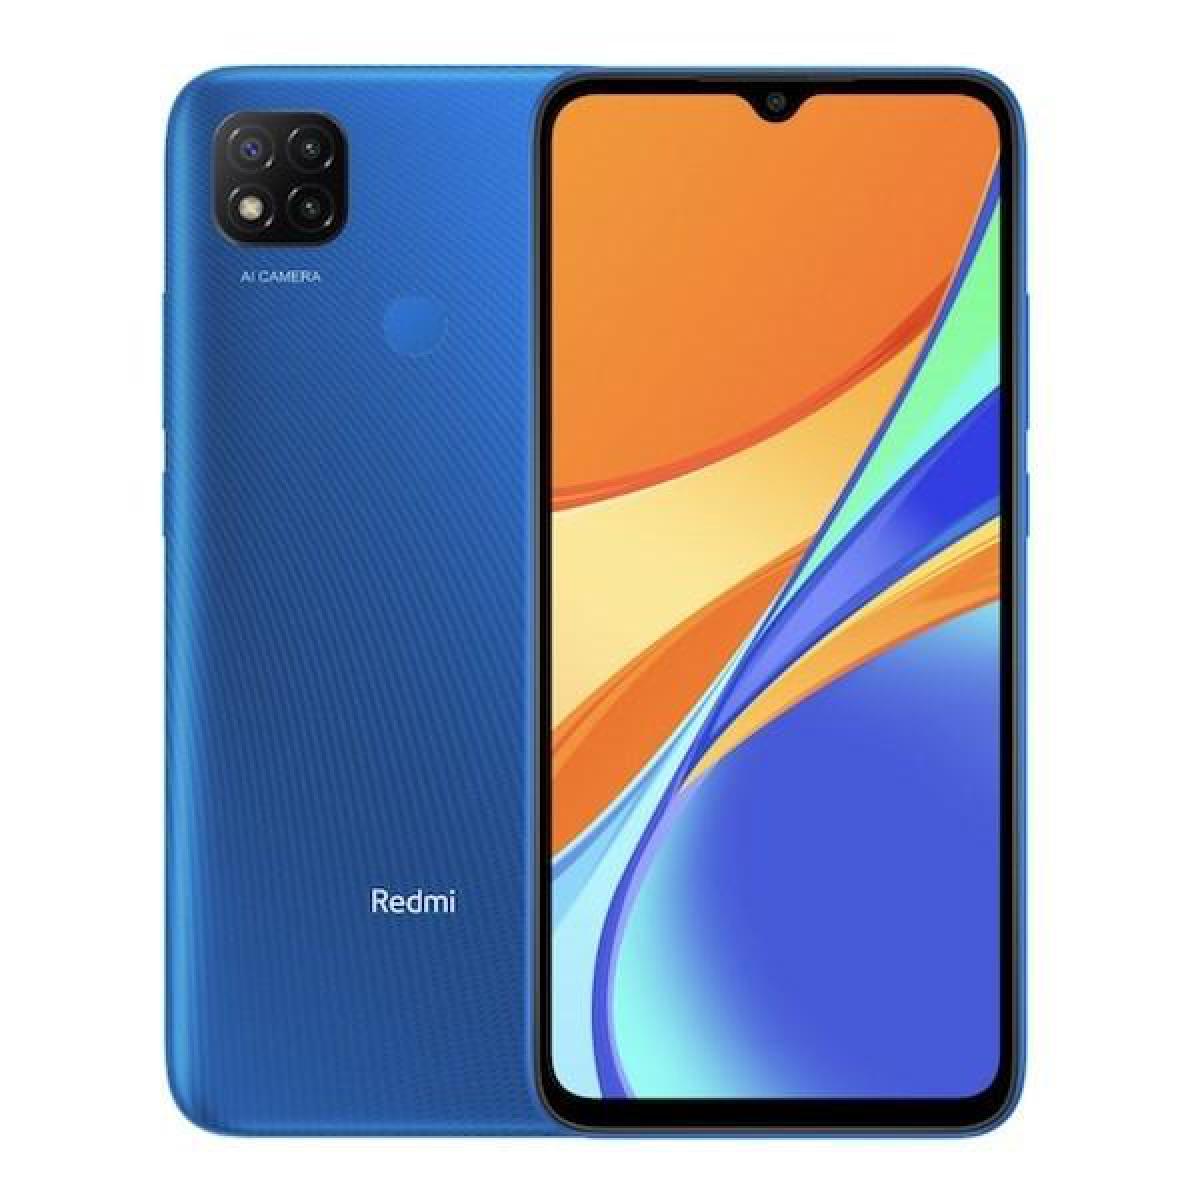 XIAOMI - XIAOMI Redmi 9C 32Go Bleu - Smartphone Android